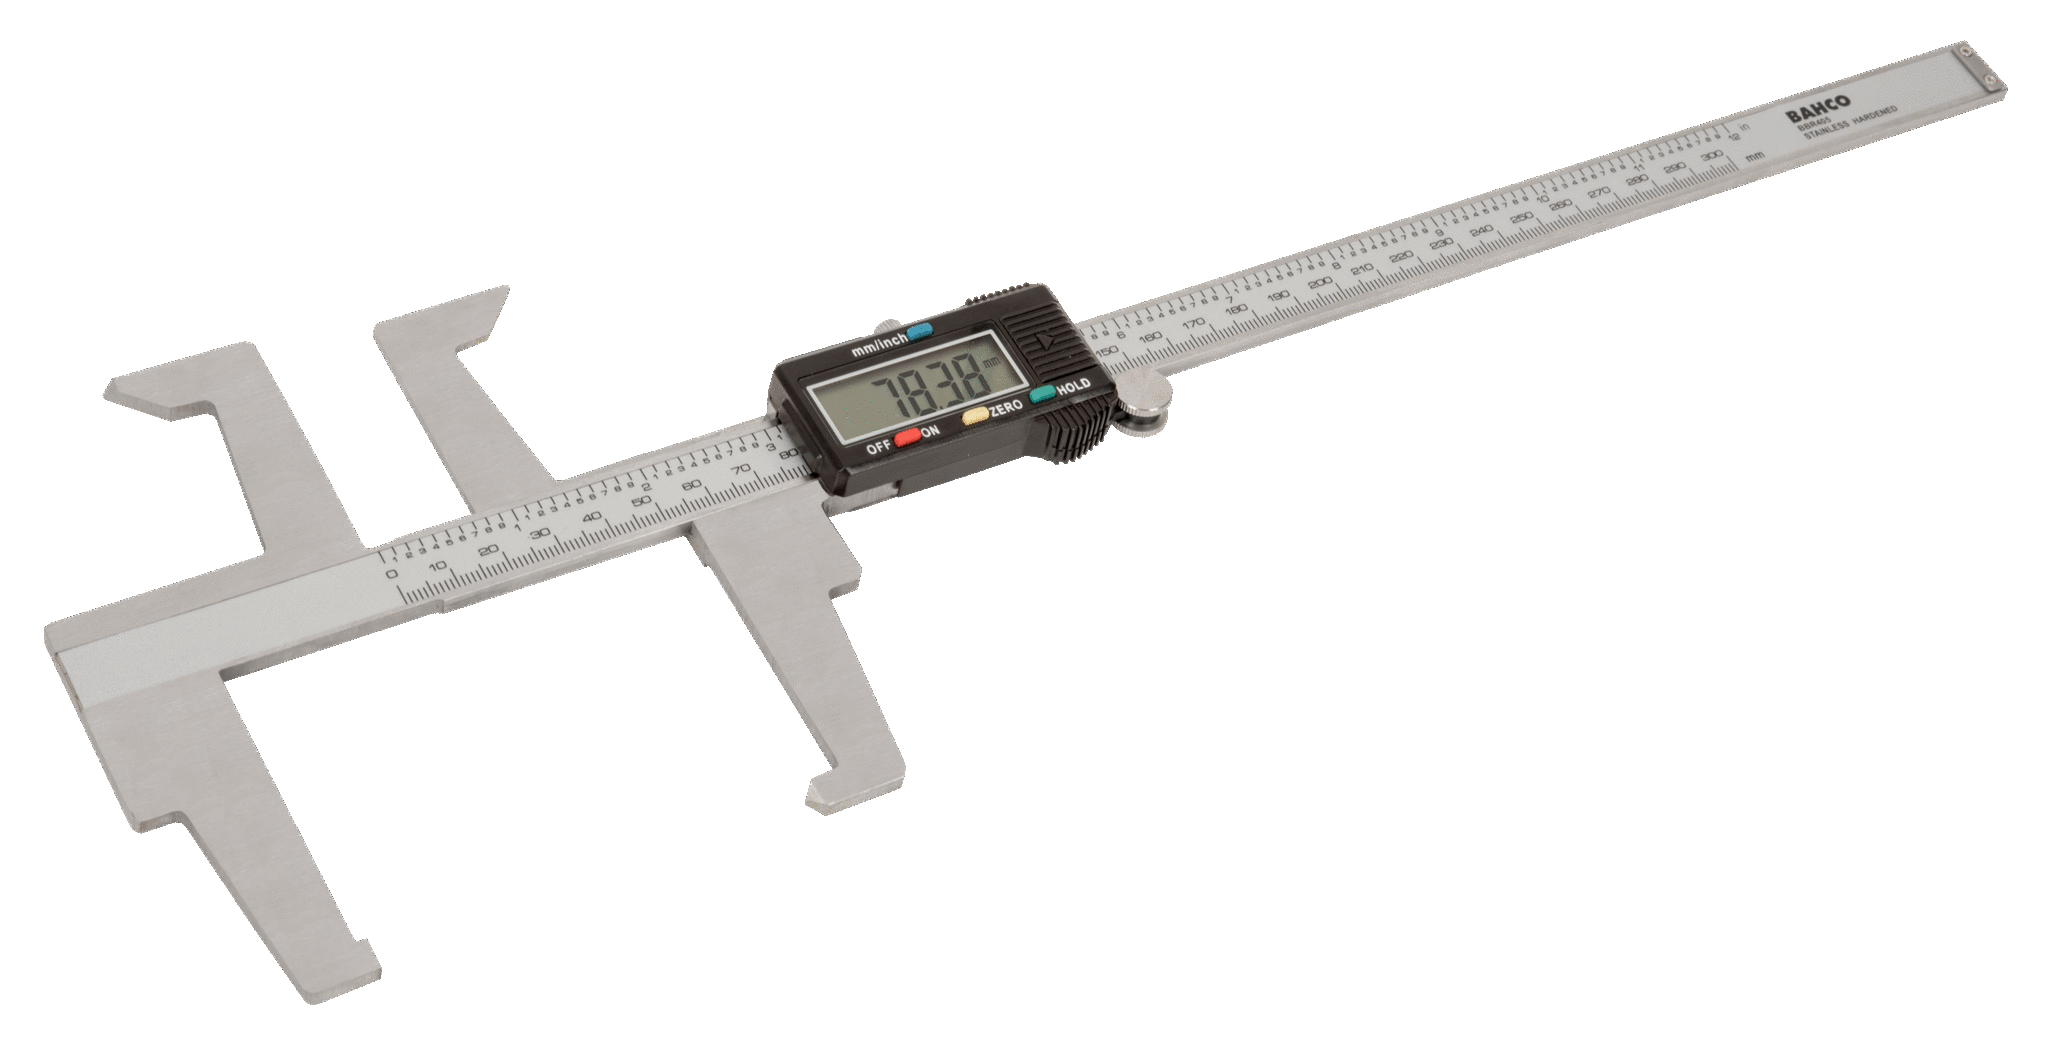 0-300 mm pied à coulisse de précision en acier carbone avec une grande précision de mesure pour la mesure de la profondeur mesure extérieure Pied à coulisse 0-300 mm . 